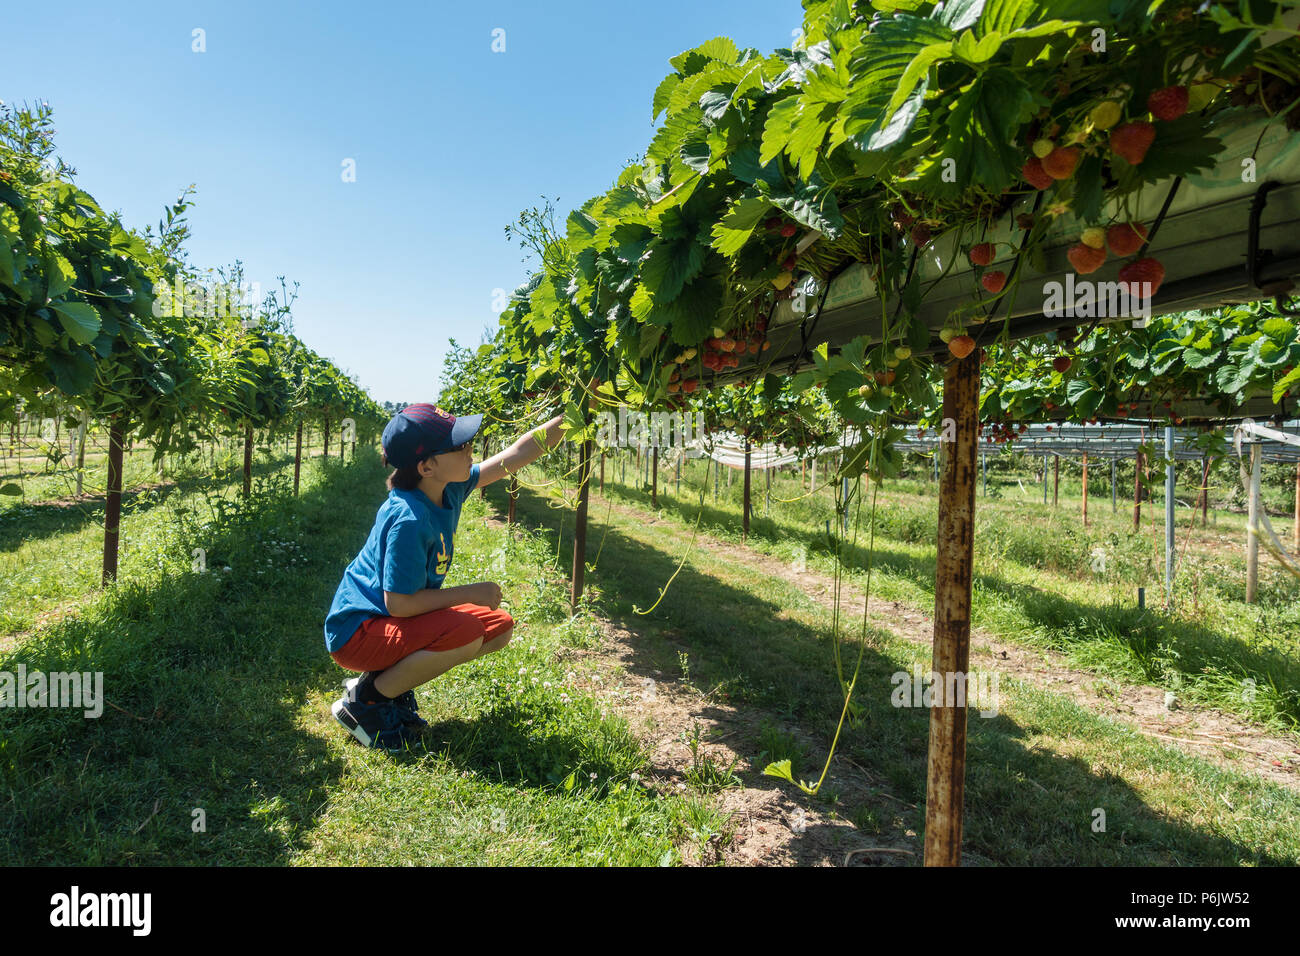 Un jeune garçon s'accroupit et ramasse des fraises sur un choisissez votre propre ferme sur une chaude journée d'été. Banque D'Images